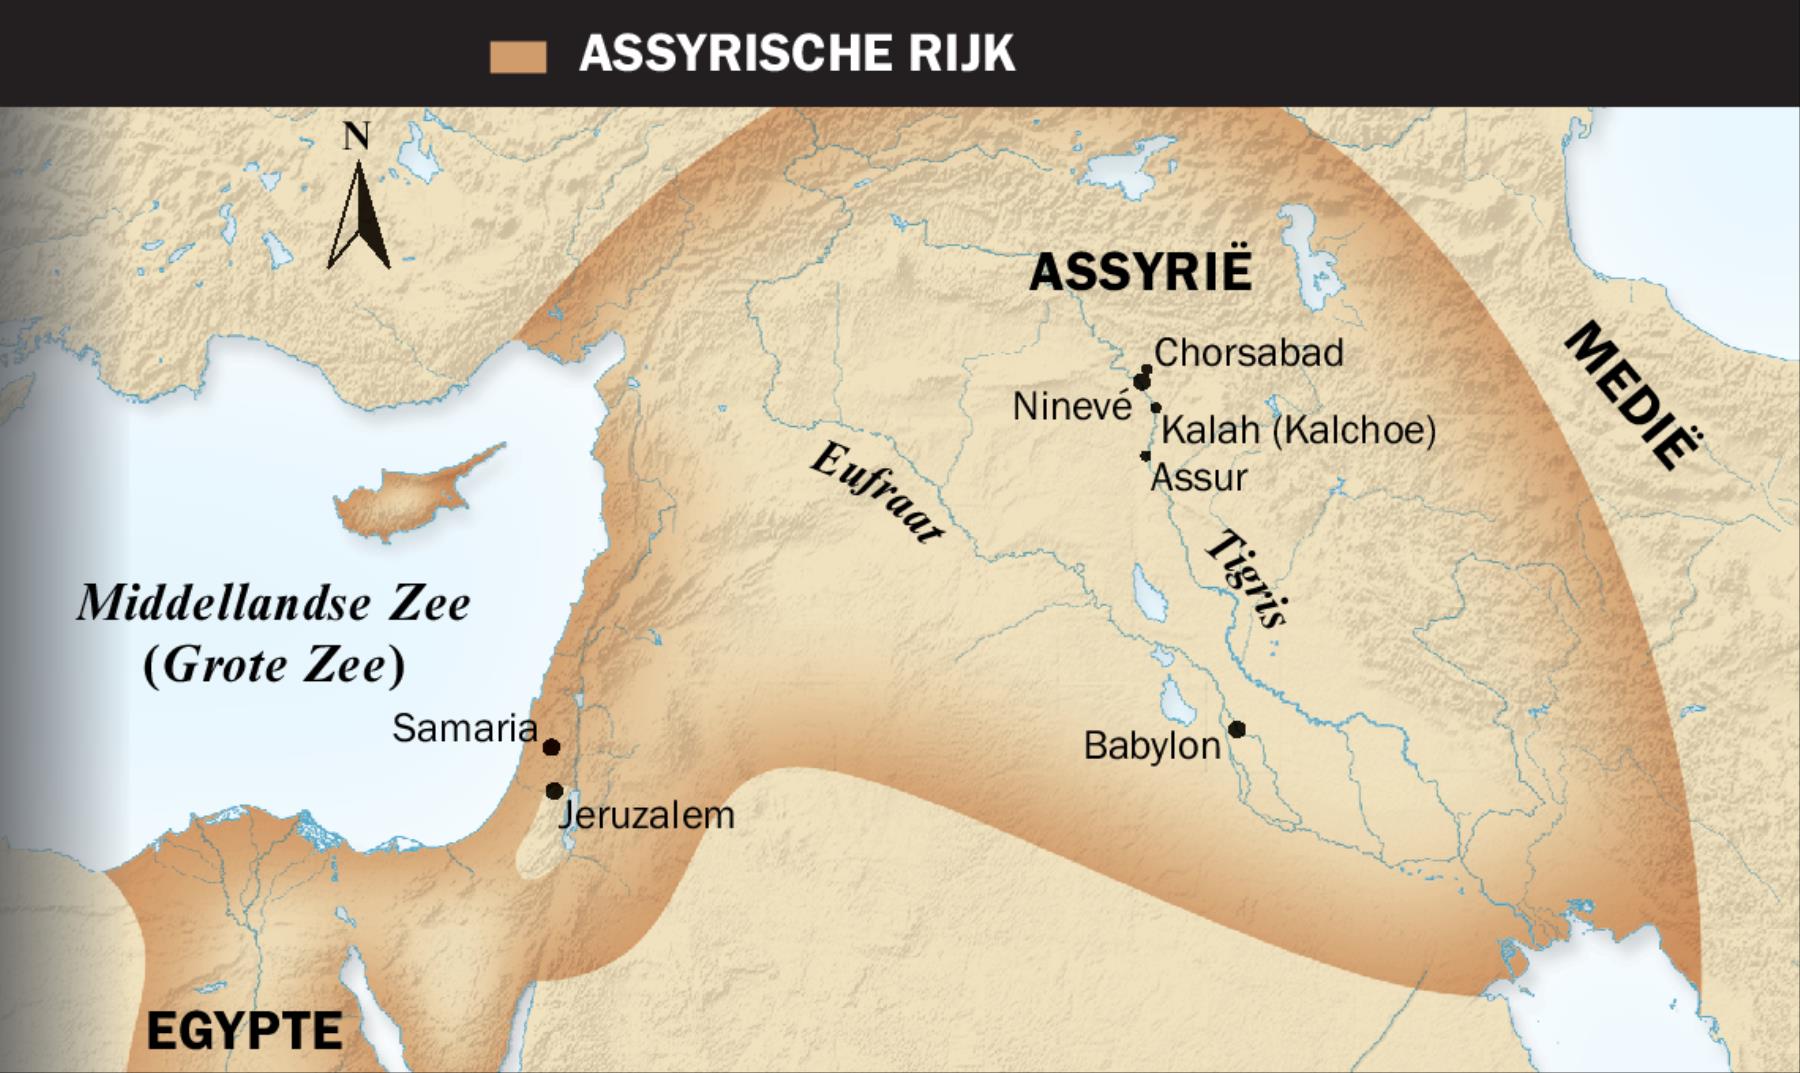 1. Een gevleugelde stier uit Assyrië; 2. Een kaart van het Assyrische Rijk